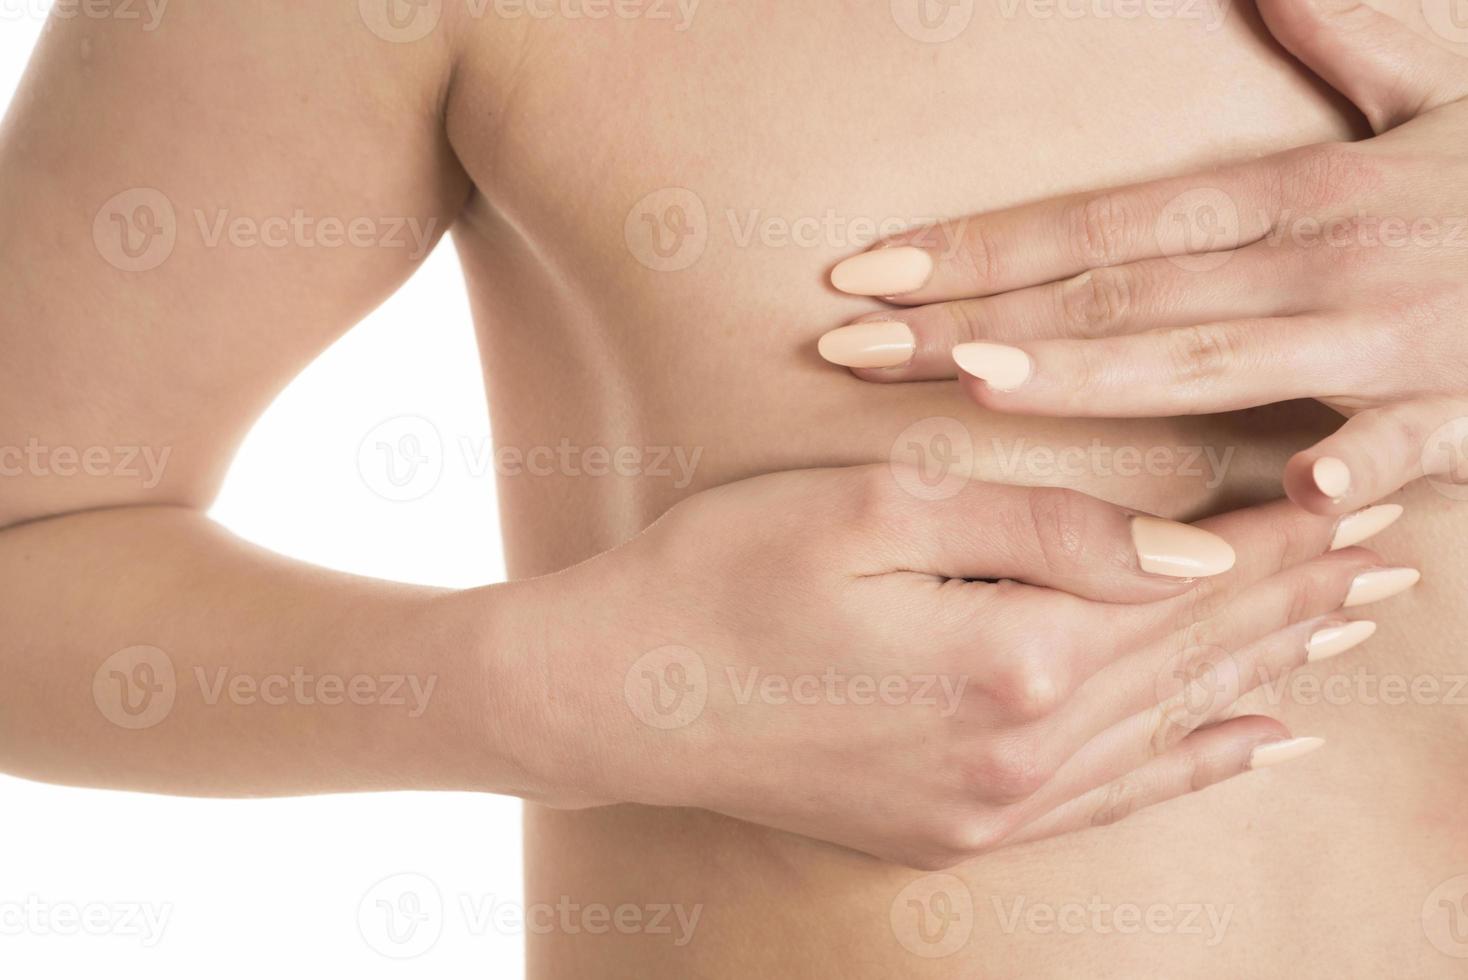 vrouw aan het doen borst zelf examen zo. controle omhoog borst veranderingen, mogelijk klontjes, vervormingen of zwelling. borst kanker bewustzijn. foto